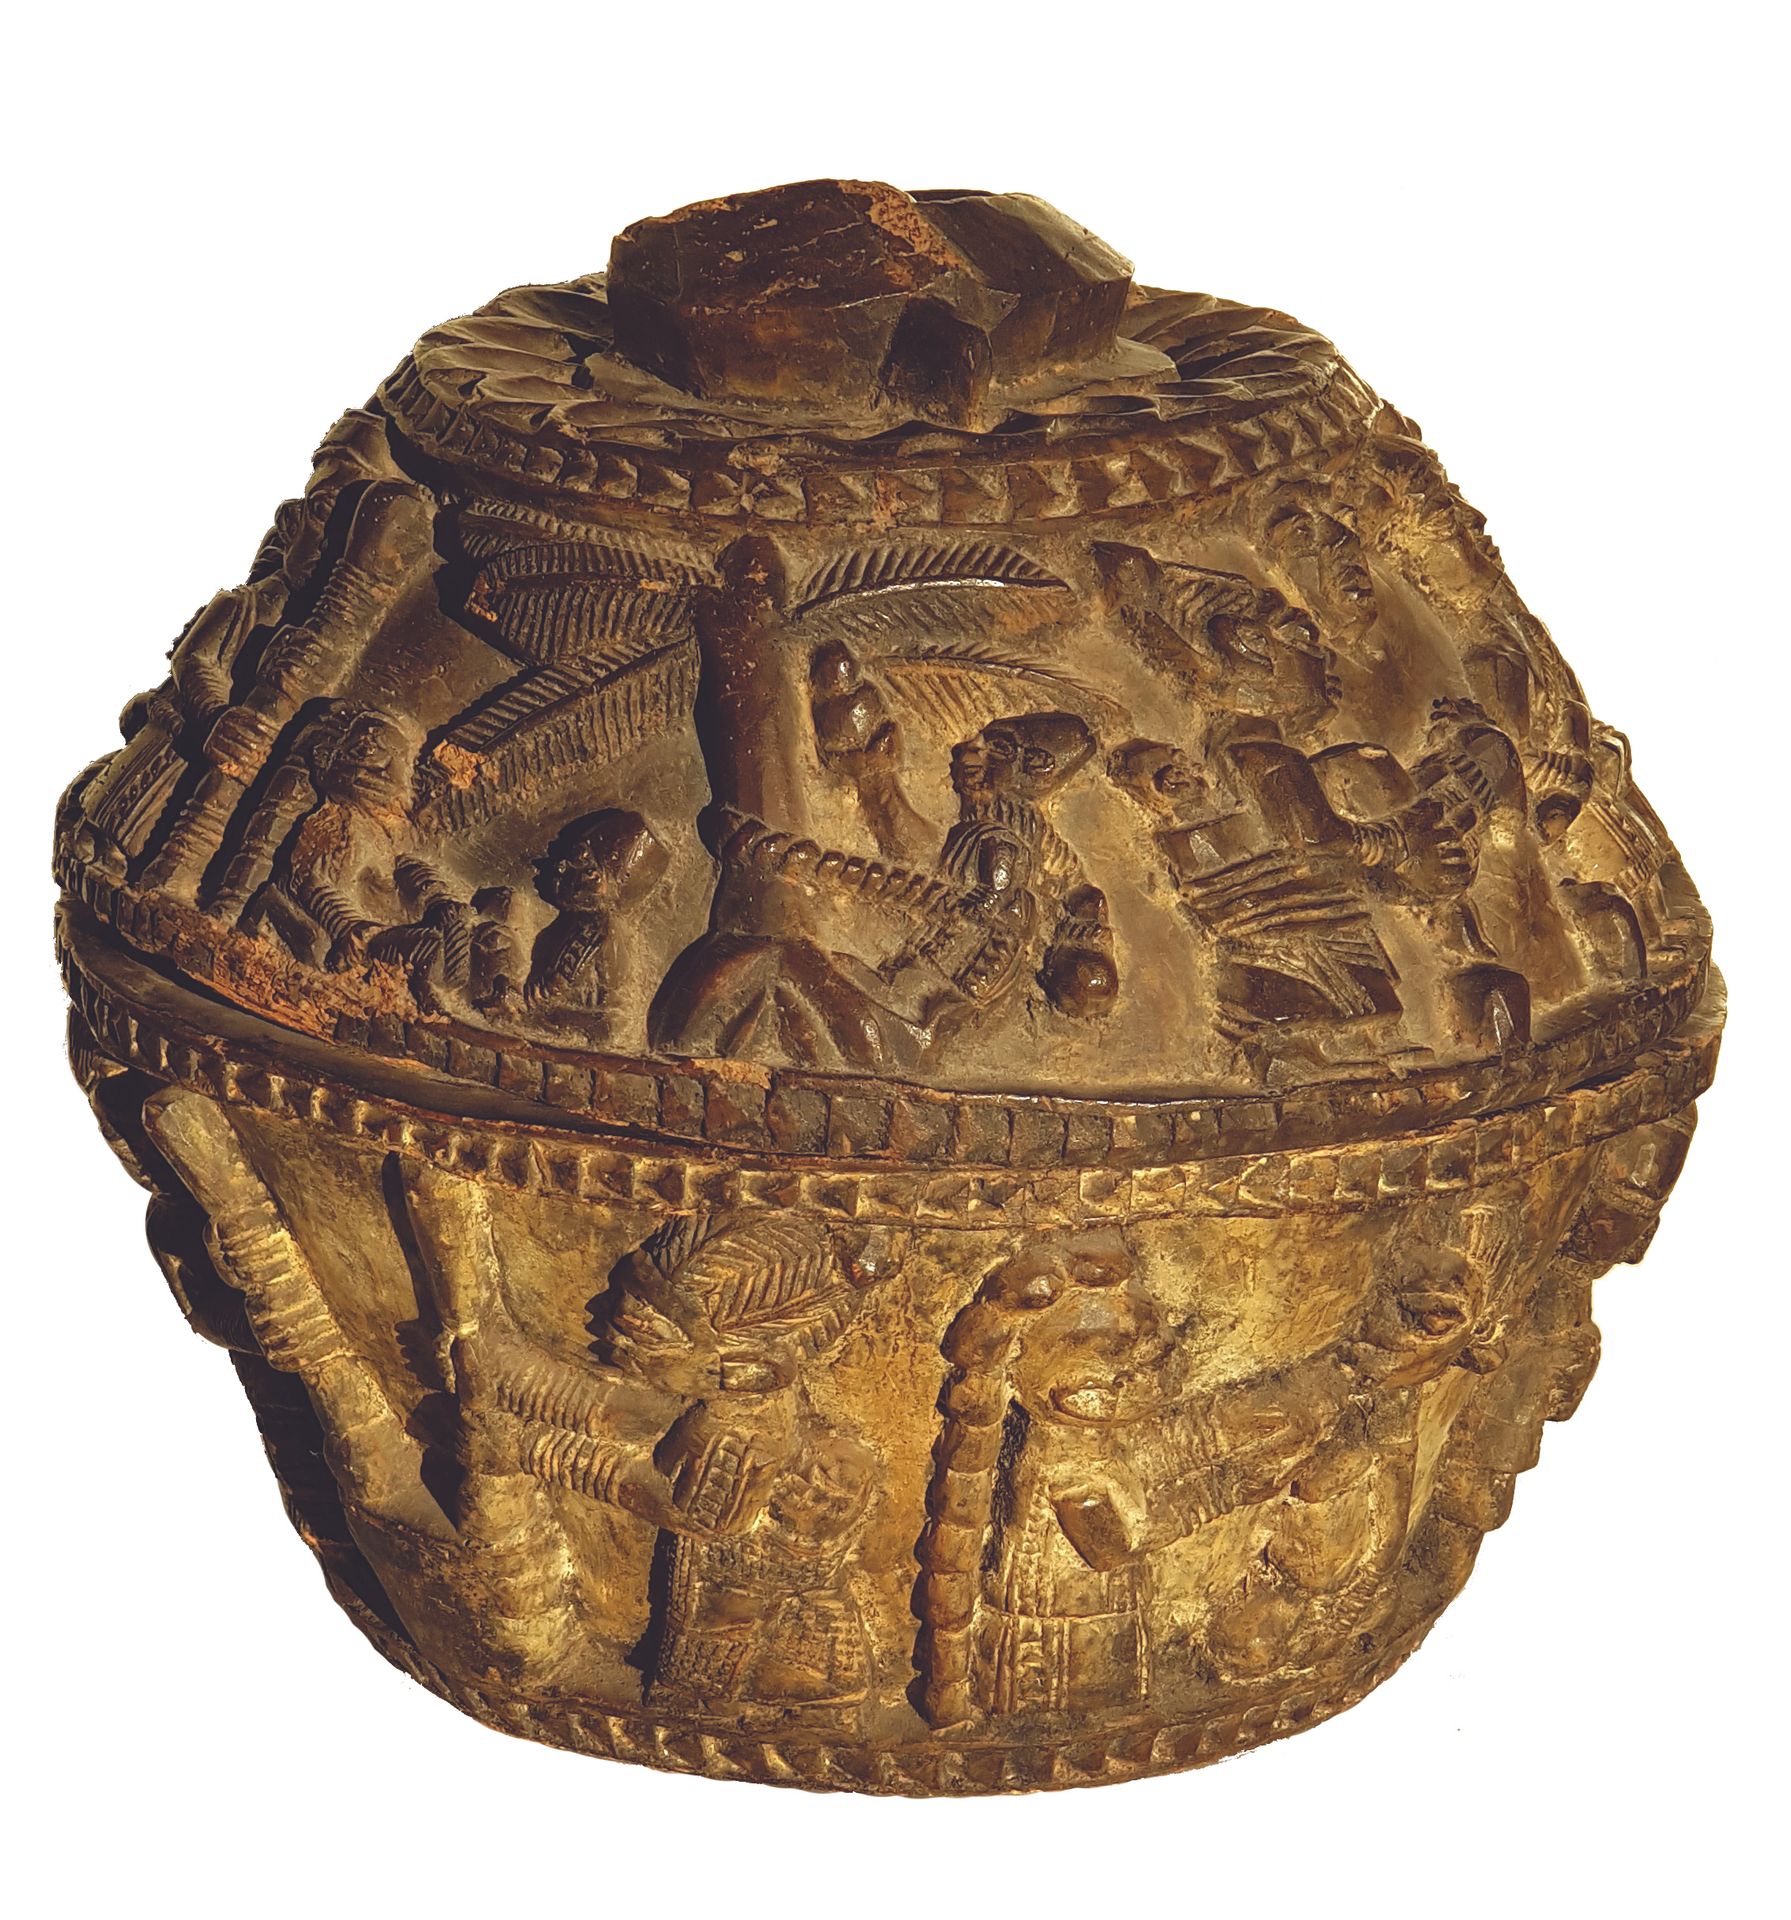 Grand vase YORUBA 
Aus Holz geschnitzt mit zahlreichen symbolischen Szenen, im G&hellip;